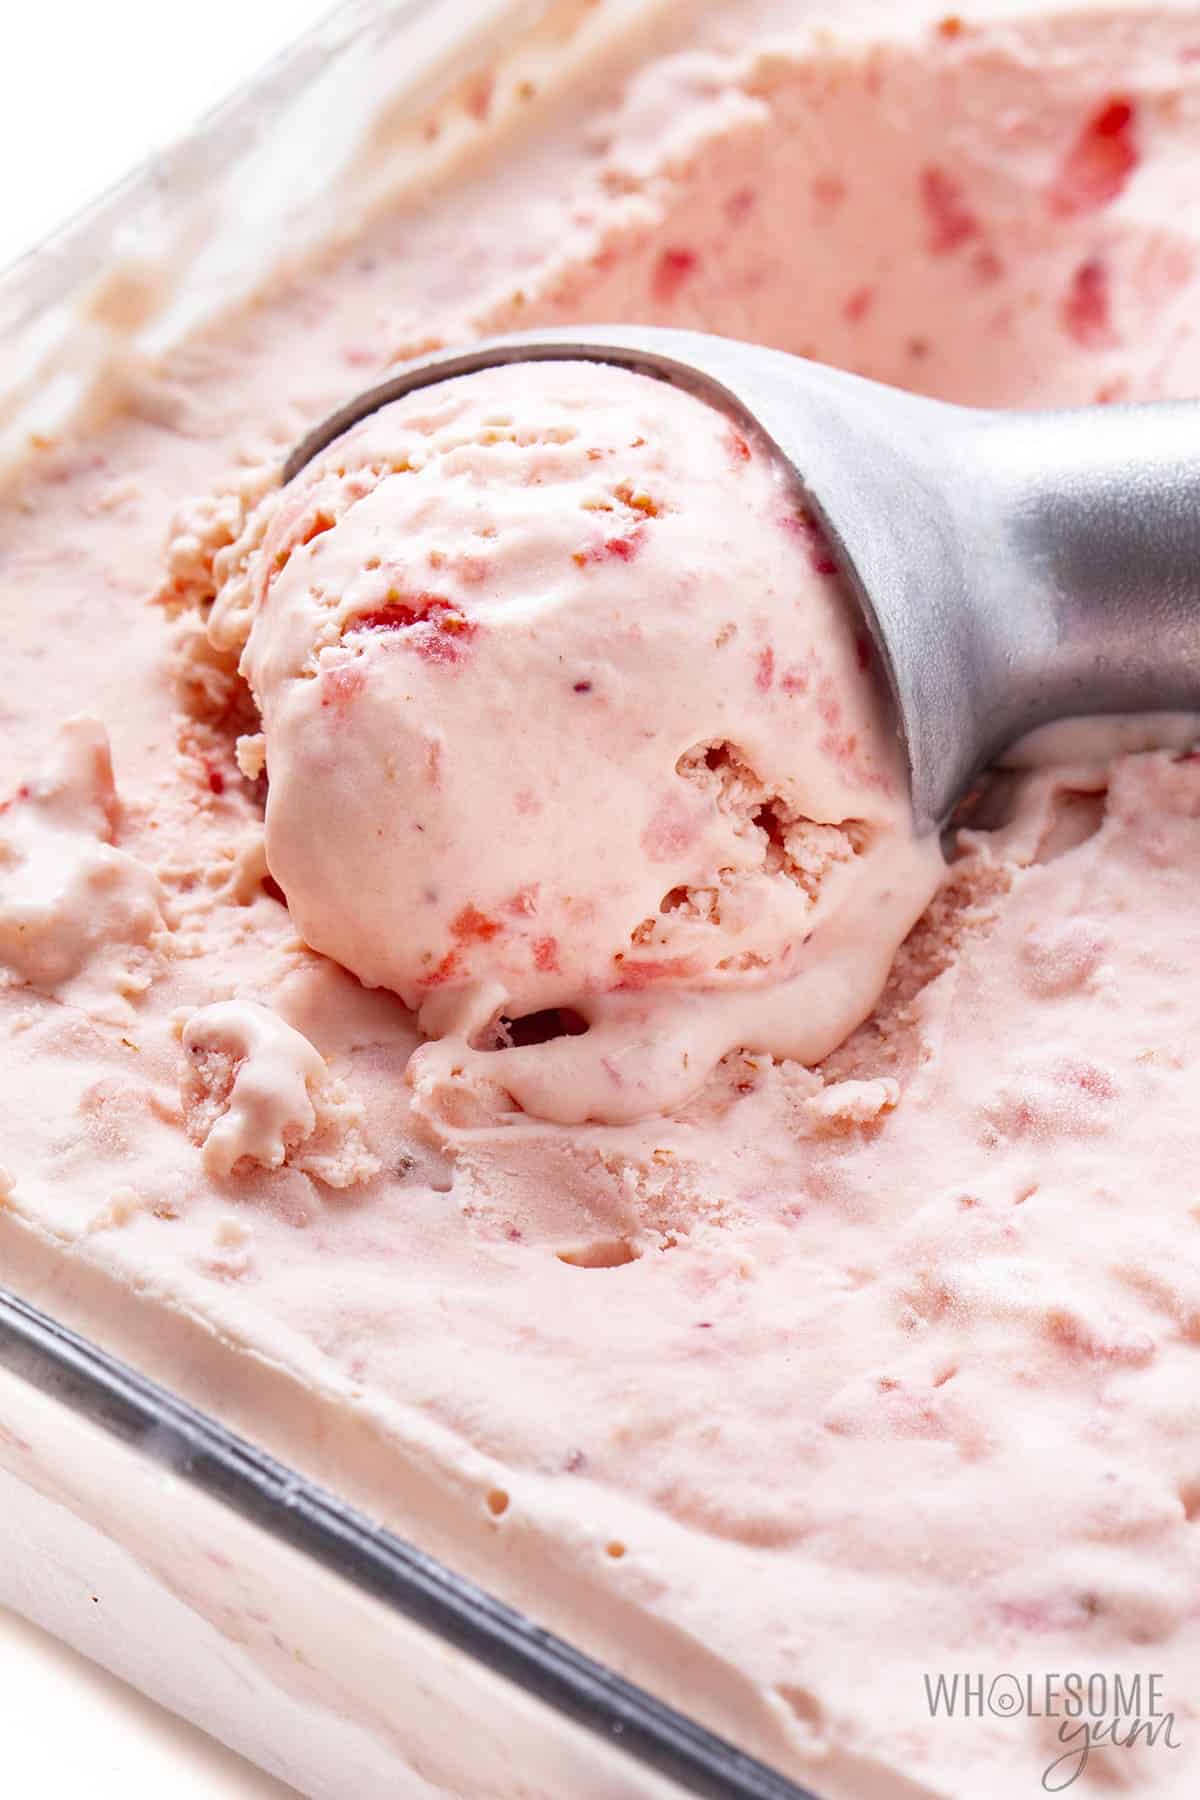 https://www.wholesomeyum.com/wp-content/uploads/2022/06/wholesomeyum-Keto-Strawberry-Ice-Cream-25.jpg